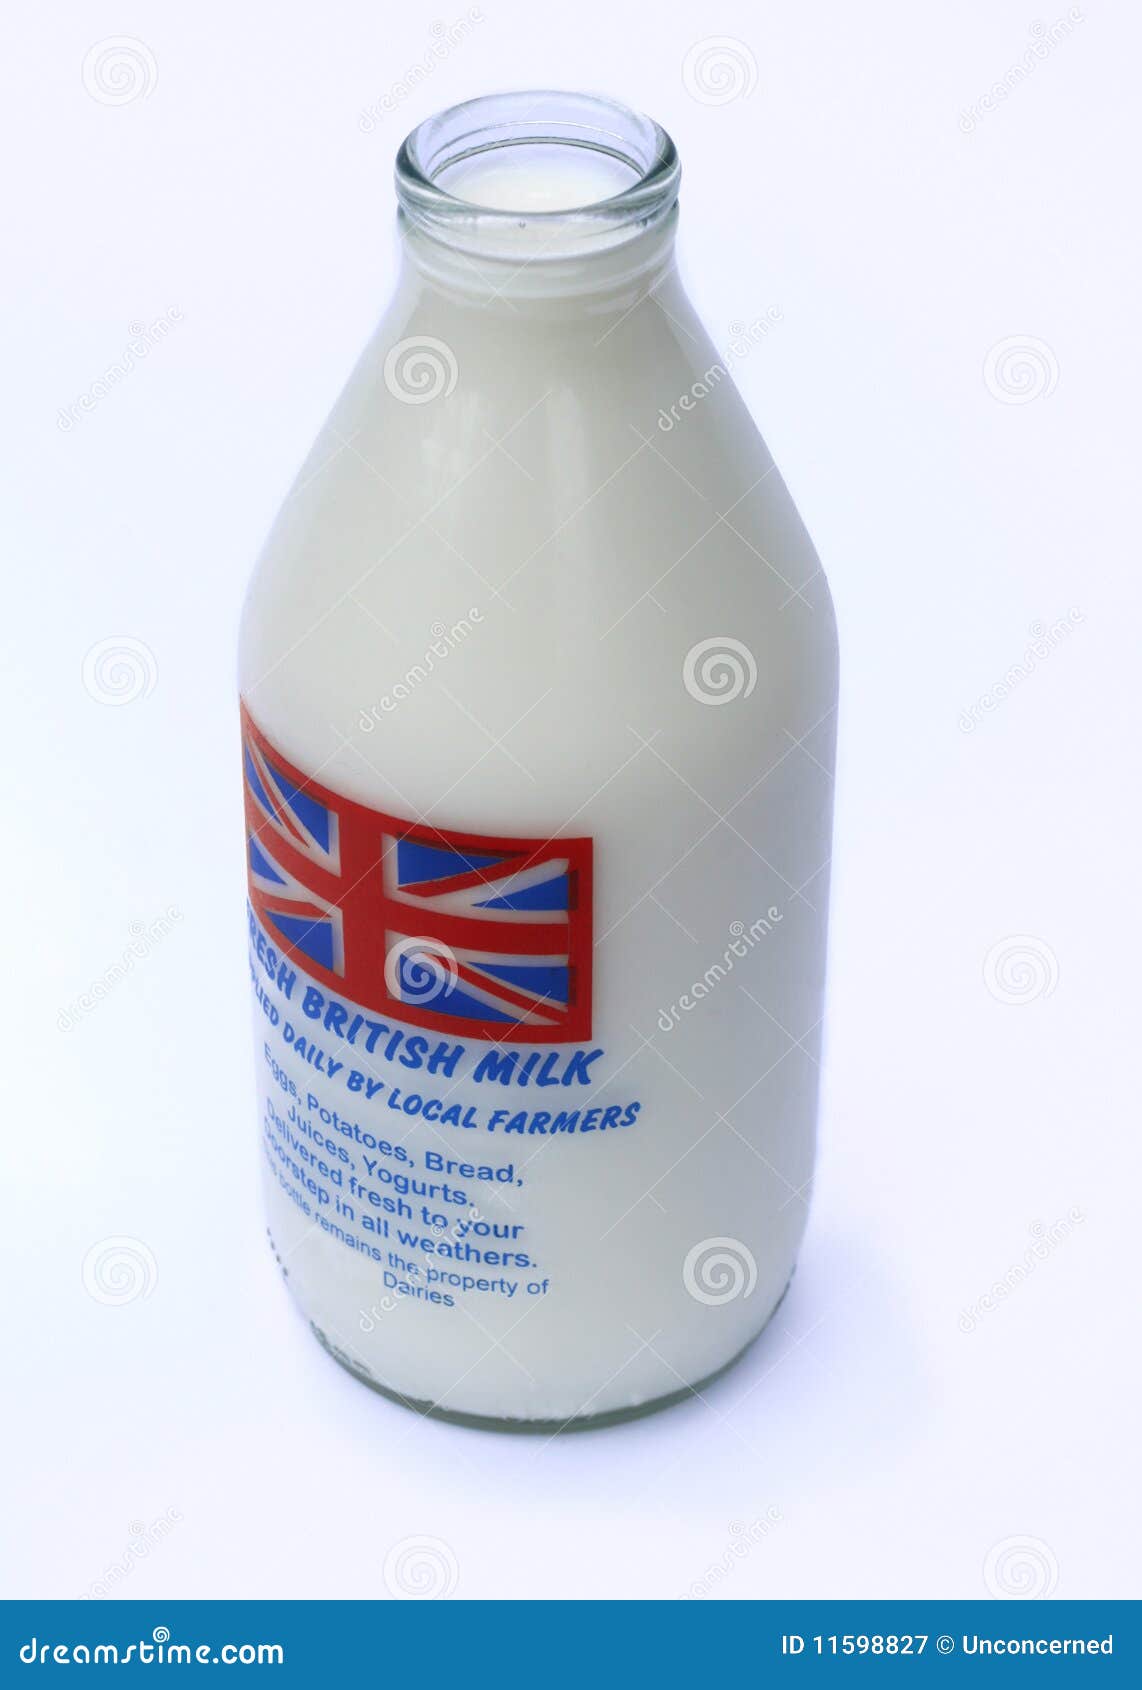  Flasche Milch  stockbild Bild von getr nk 